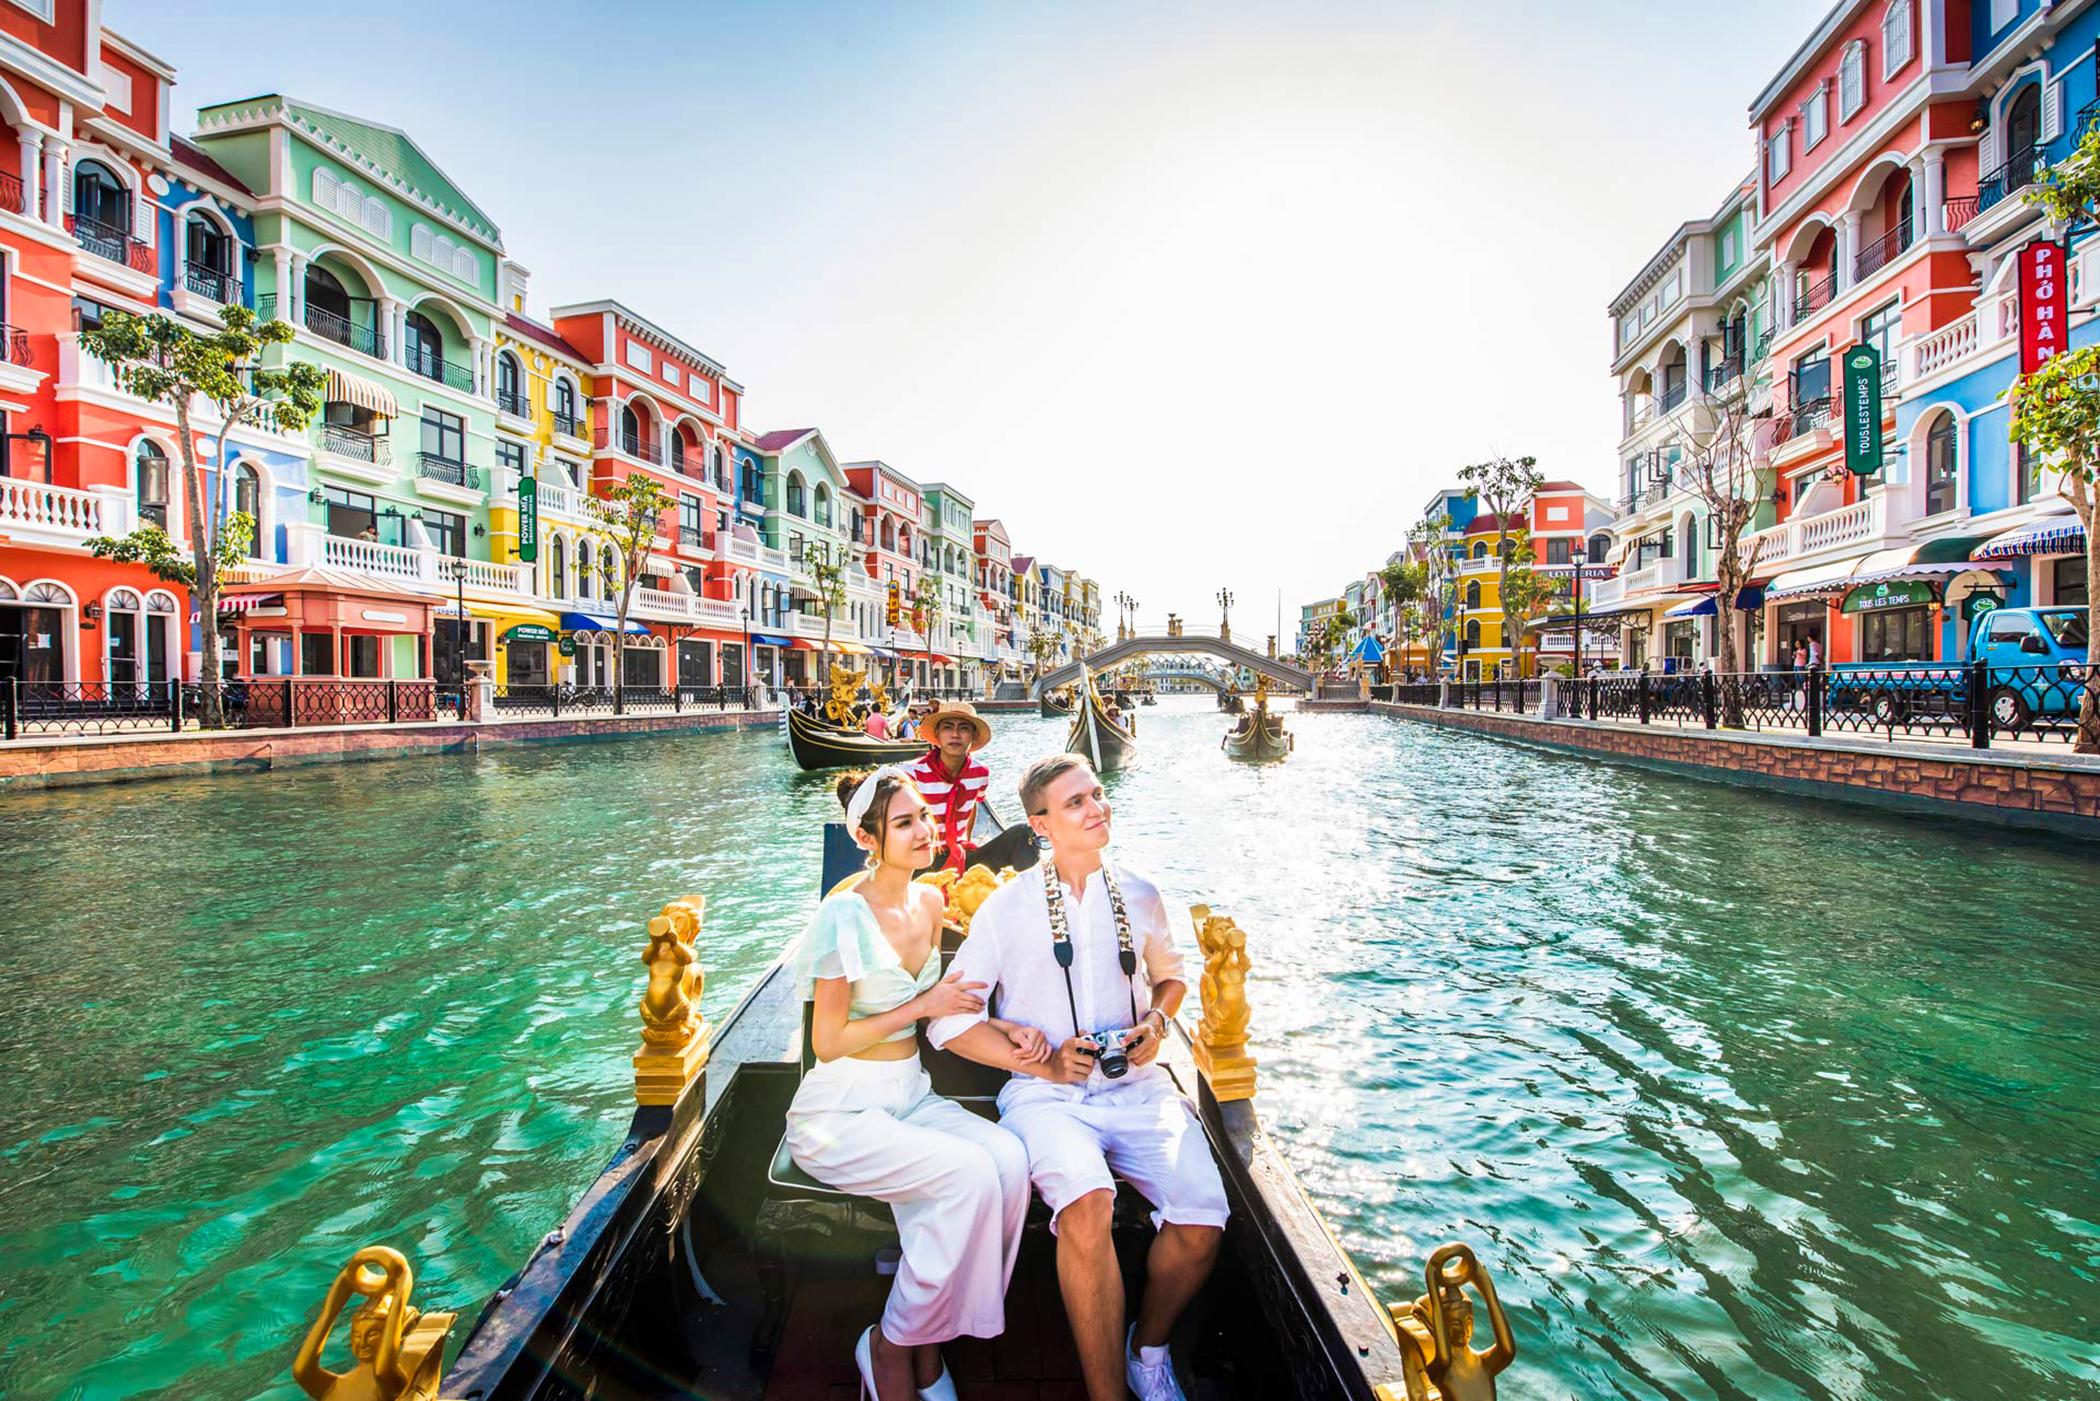 Thành phố du lịch: Hãy cùng đến với những thành phố du lịch tuyệt đẹp ở Việt Nam. Tại đây, bạn sẽ được trải nghiệm không chỉ các kỳ quan kiến trúc đẹp mắt, mà còn những trải nghiệm văn hóa đặc sắc, ẩm thực tuyệt vời và những địa điểm giải trí sôi động. Đây sẽ là một chuyến đi thú vị và bổ ích cho bạn và gia đình.